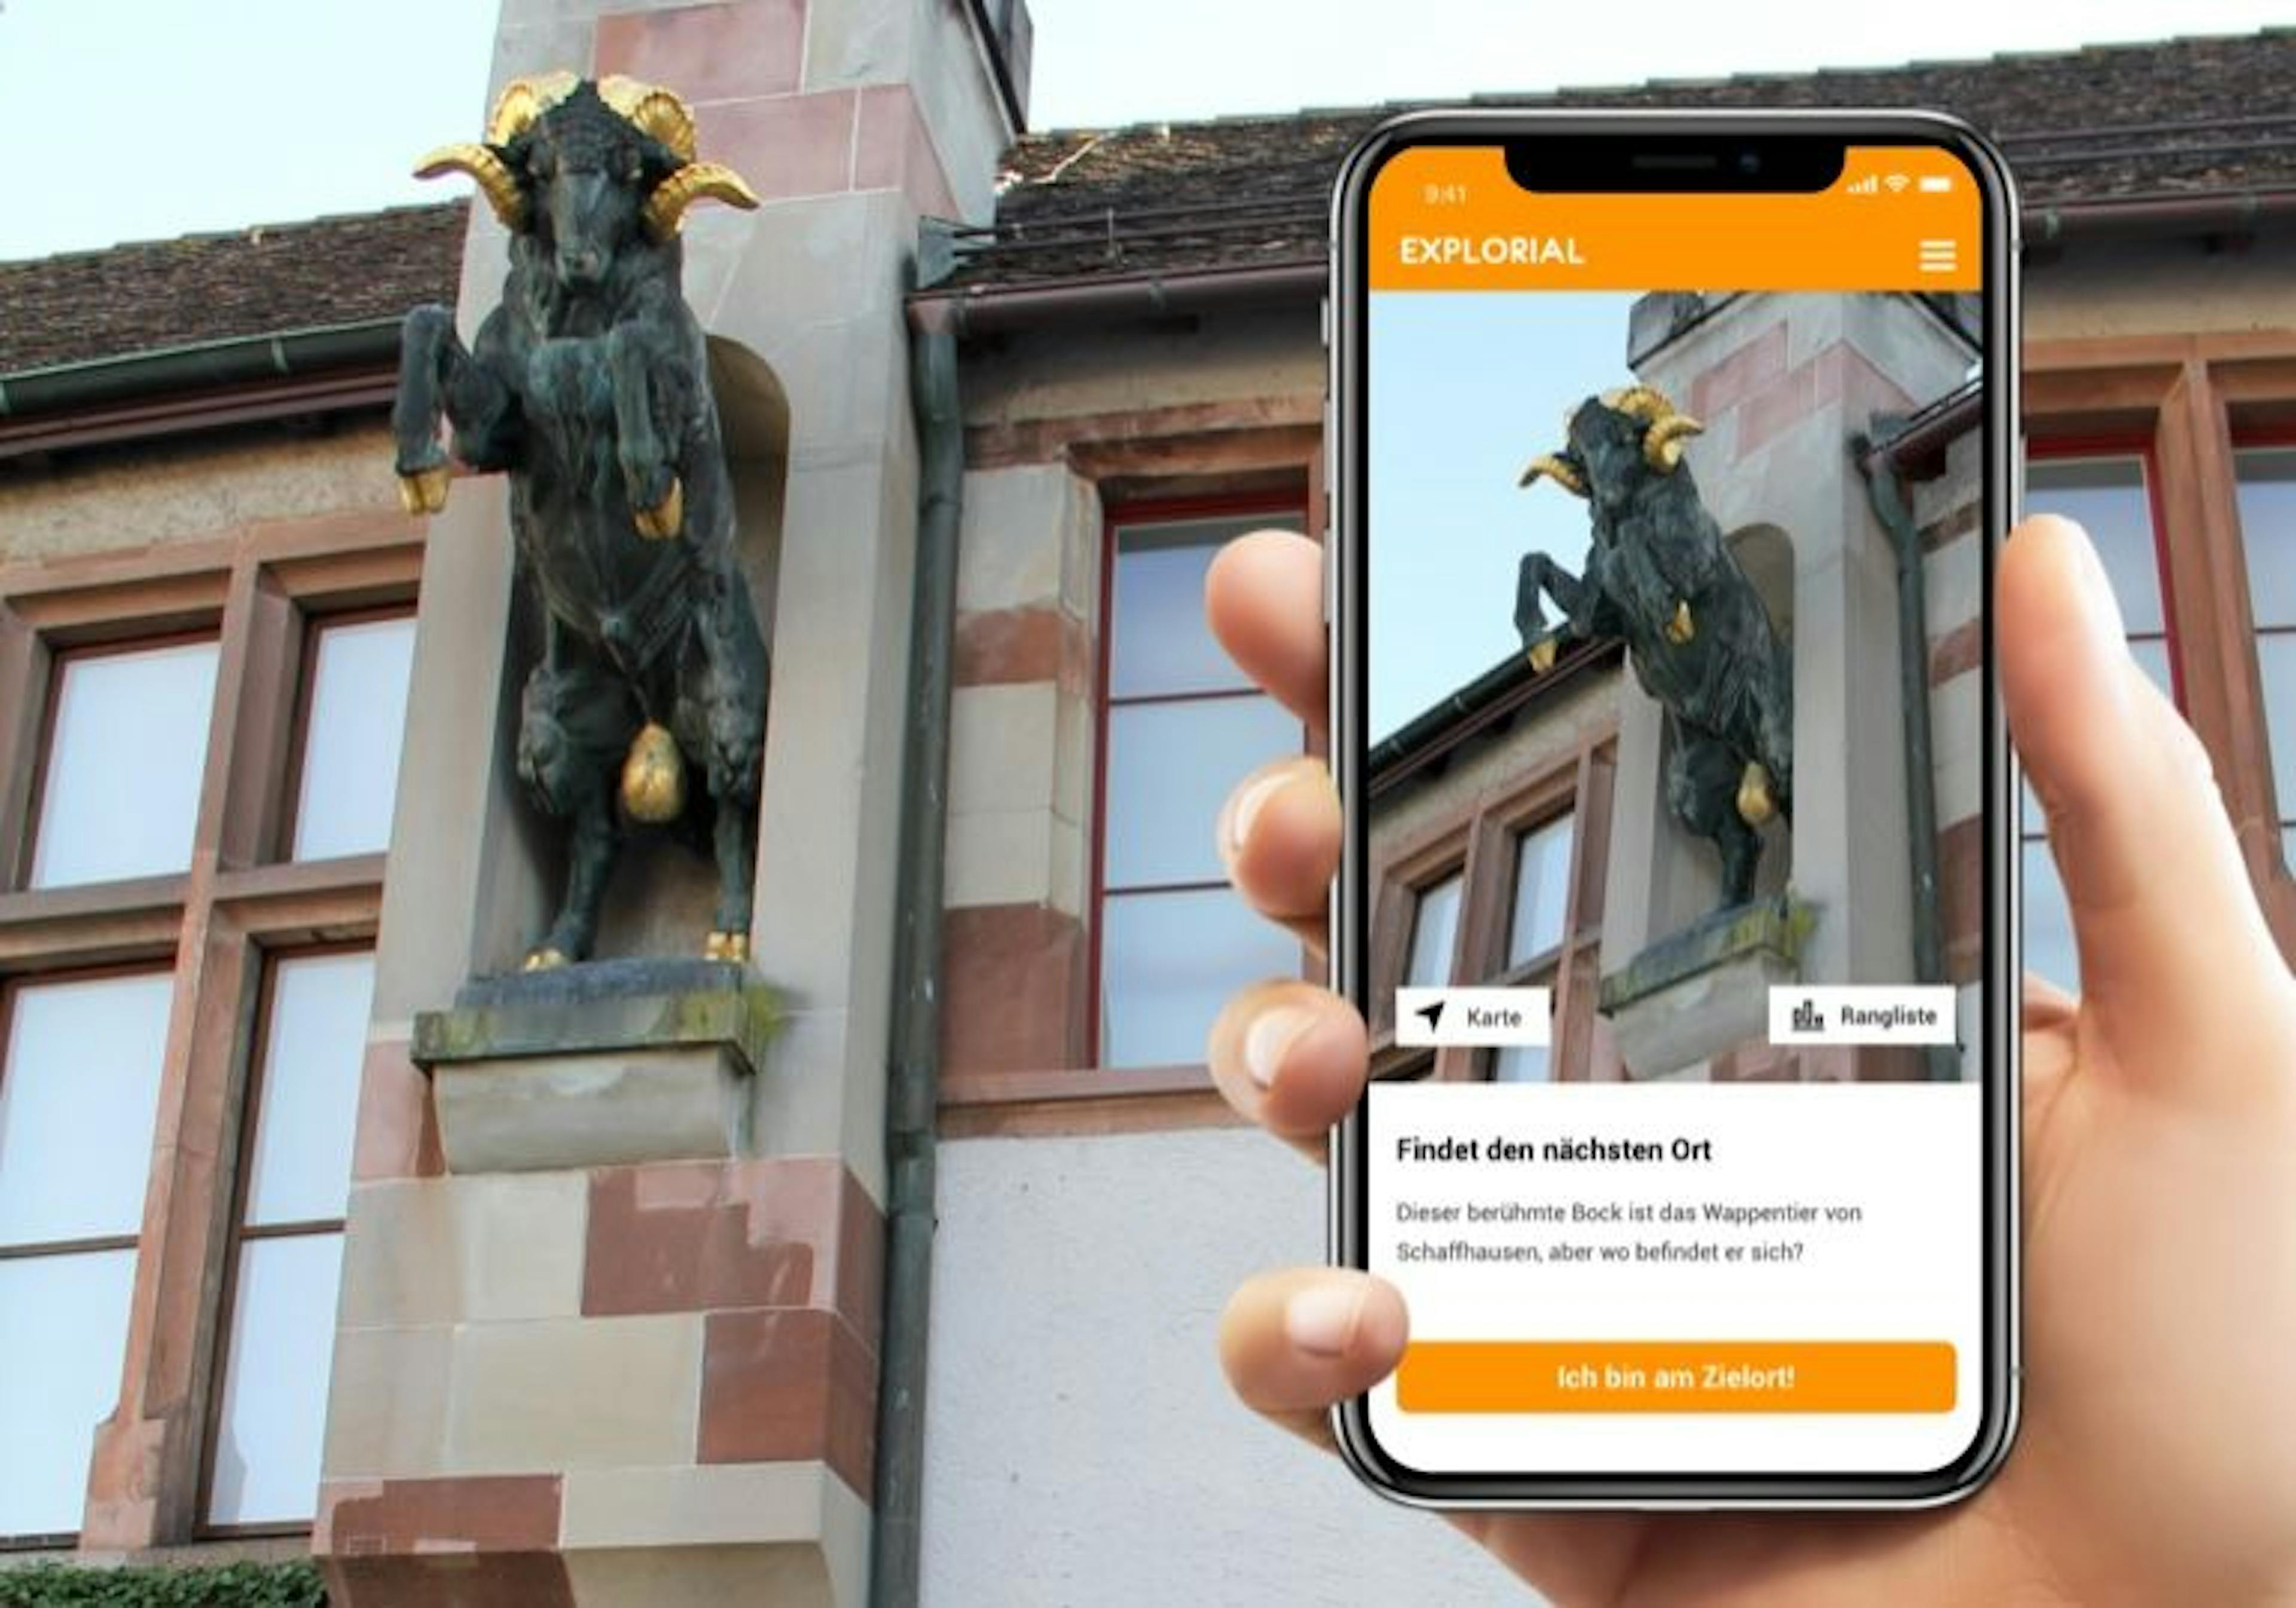 Caccia al tesoro interattiva di Schaffhausen con lo smartphone